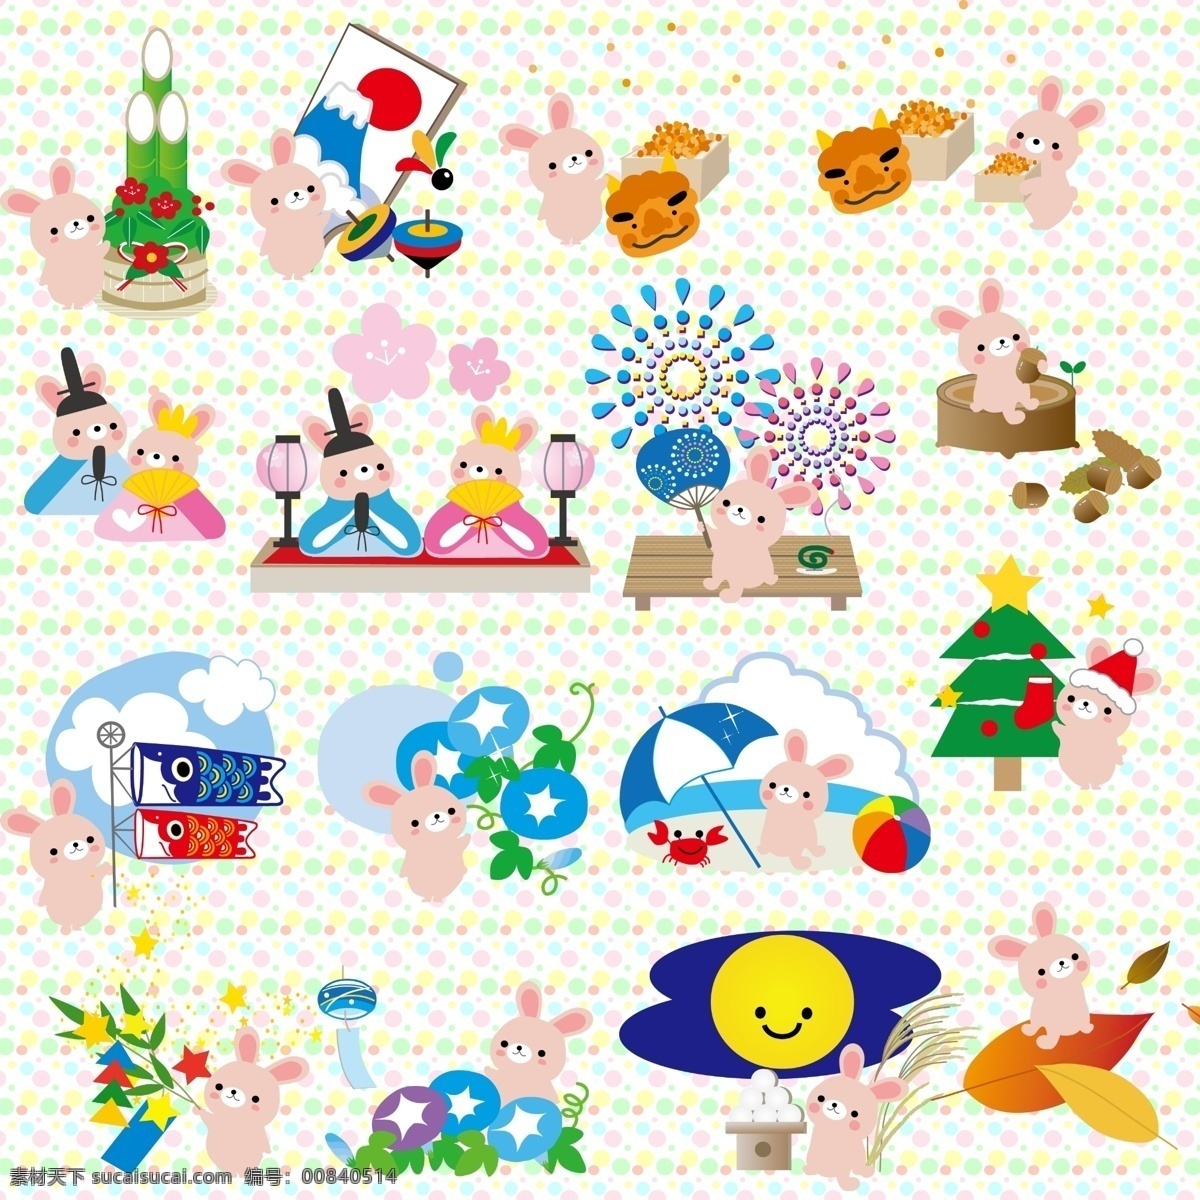 分层 春天 冬天 动物 卡通 可爱 秋天 四季 兔子 模板下载 兔子与四季 日本风情 夏天 源文件 海报 促销海报